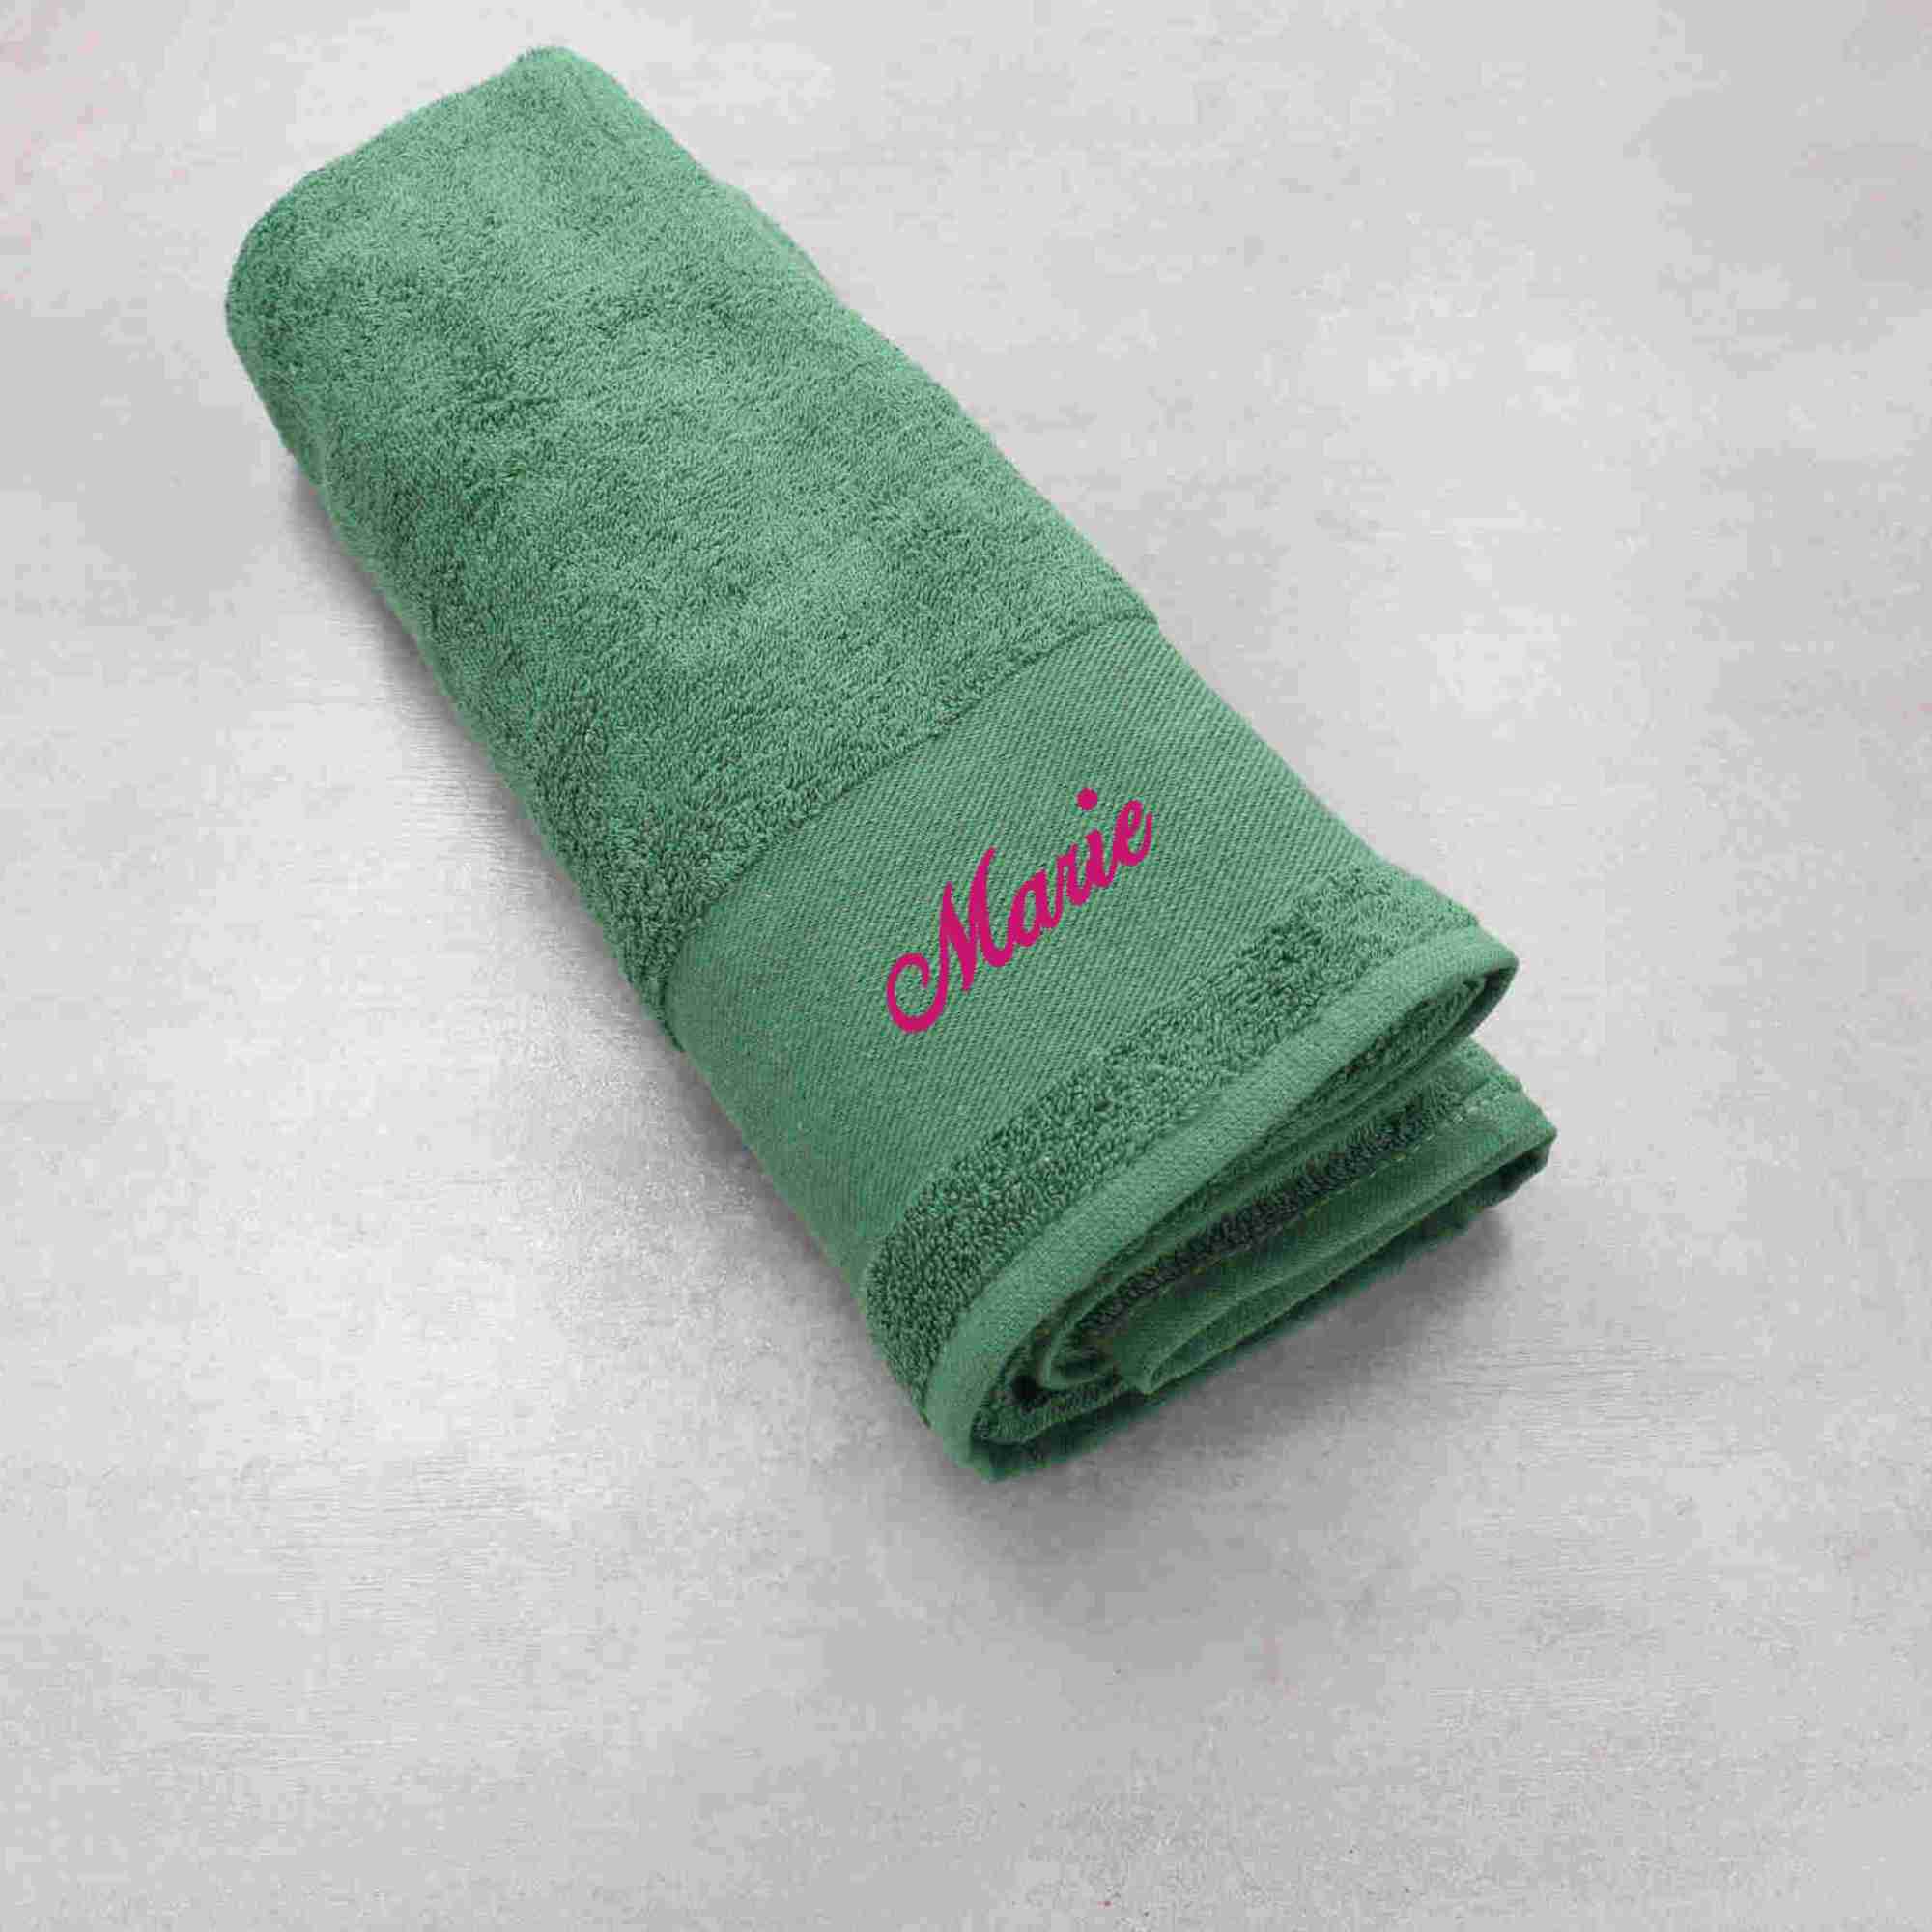 Personalisiertes Handtuch in groß mit Namen bestickt in der Farbe grün